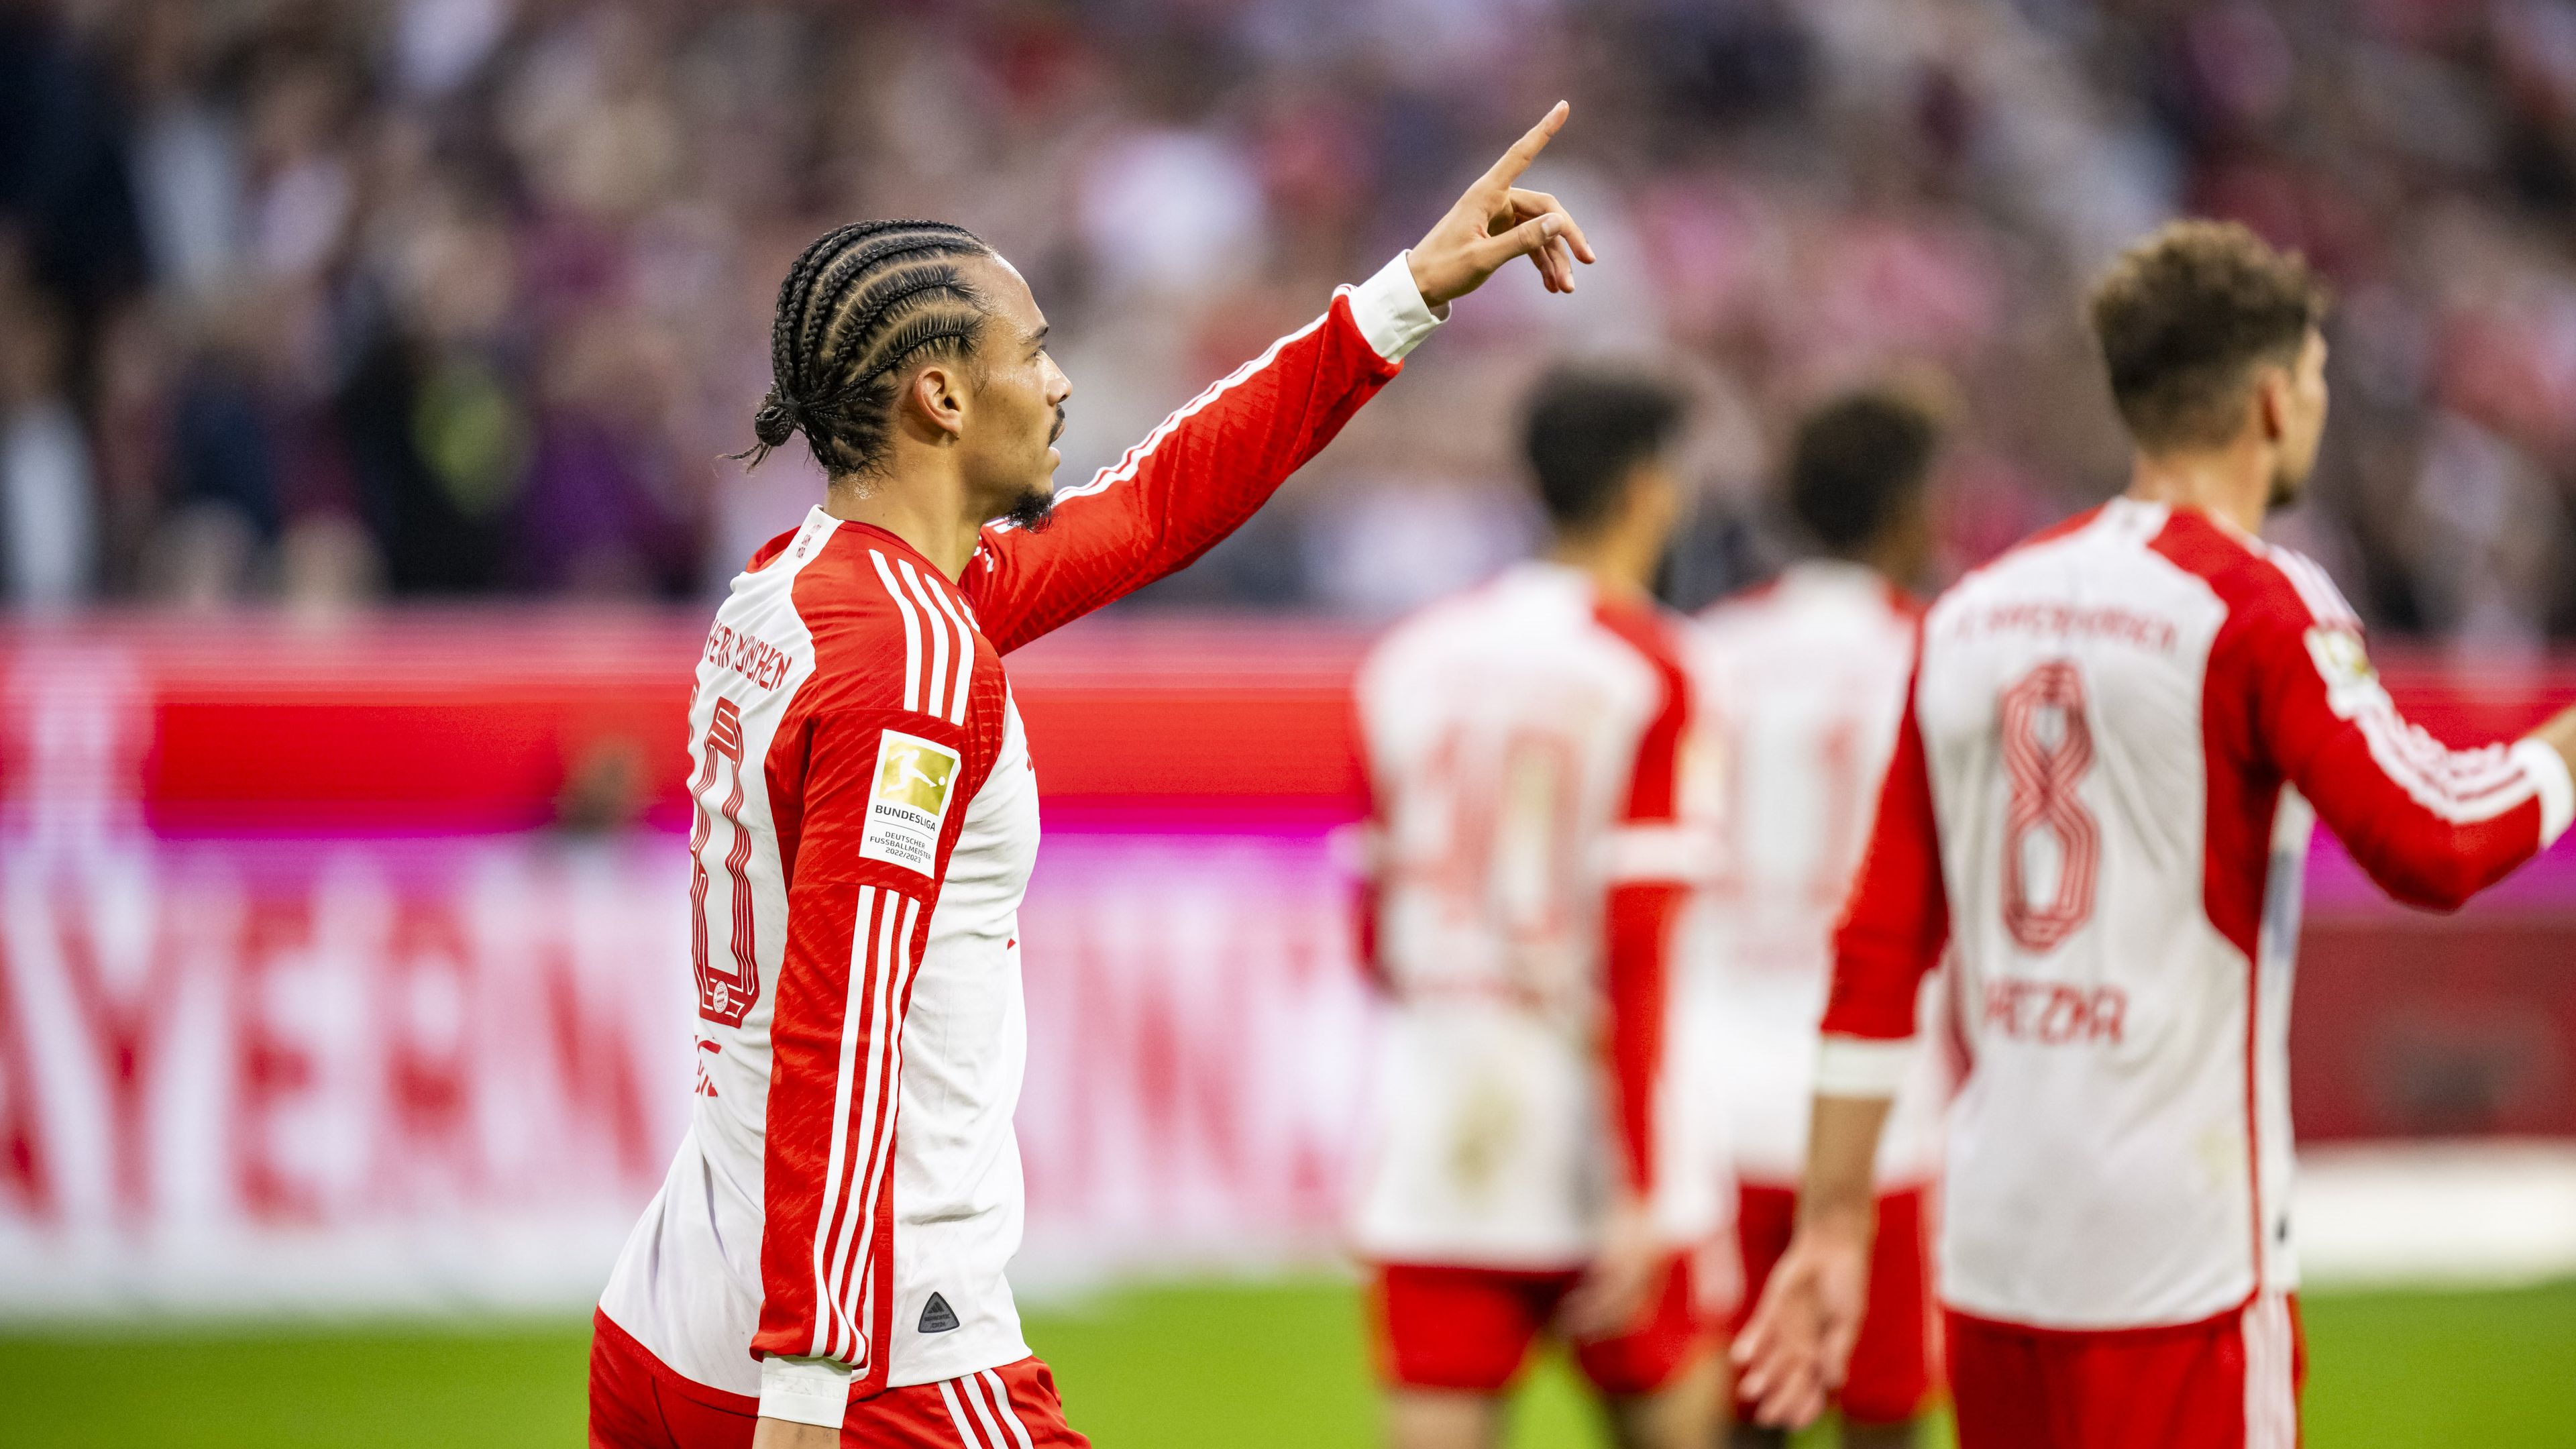 Esélyt sem adott Sallaiéknak a Bayern München – videóval